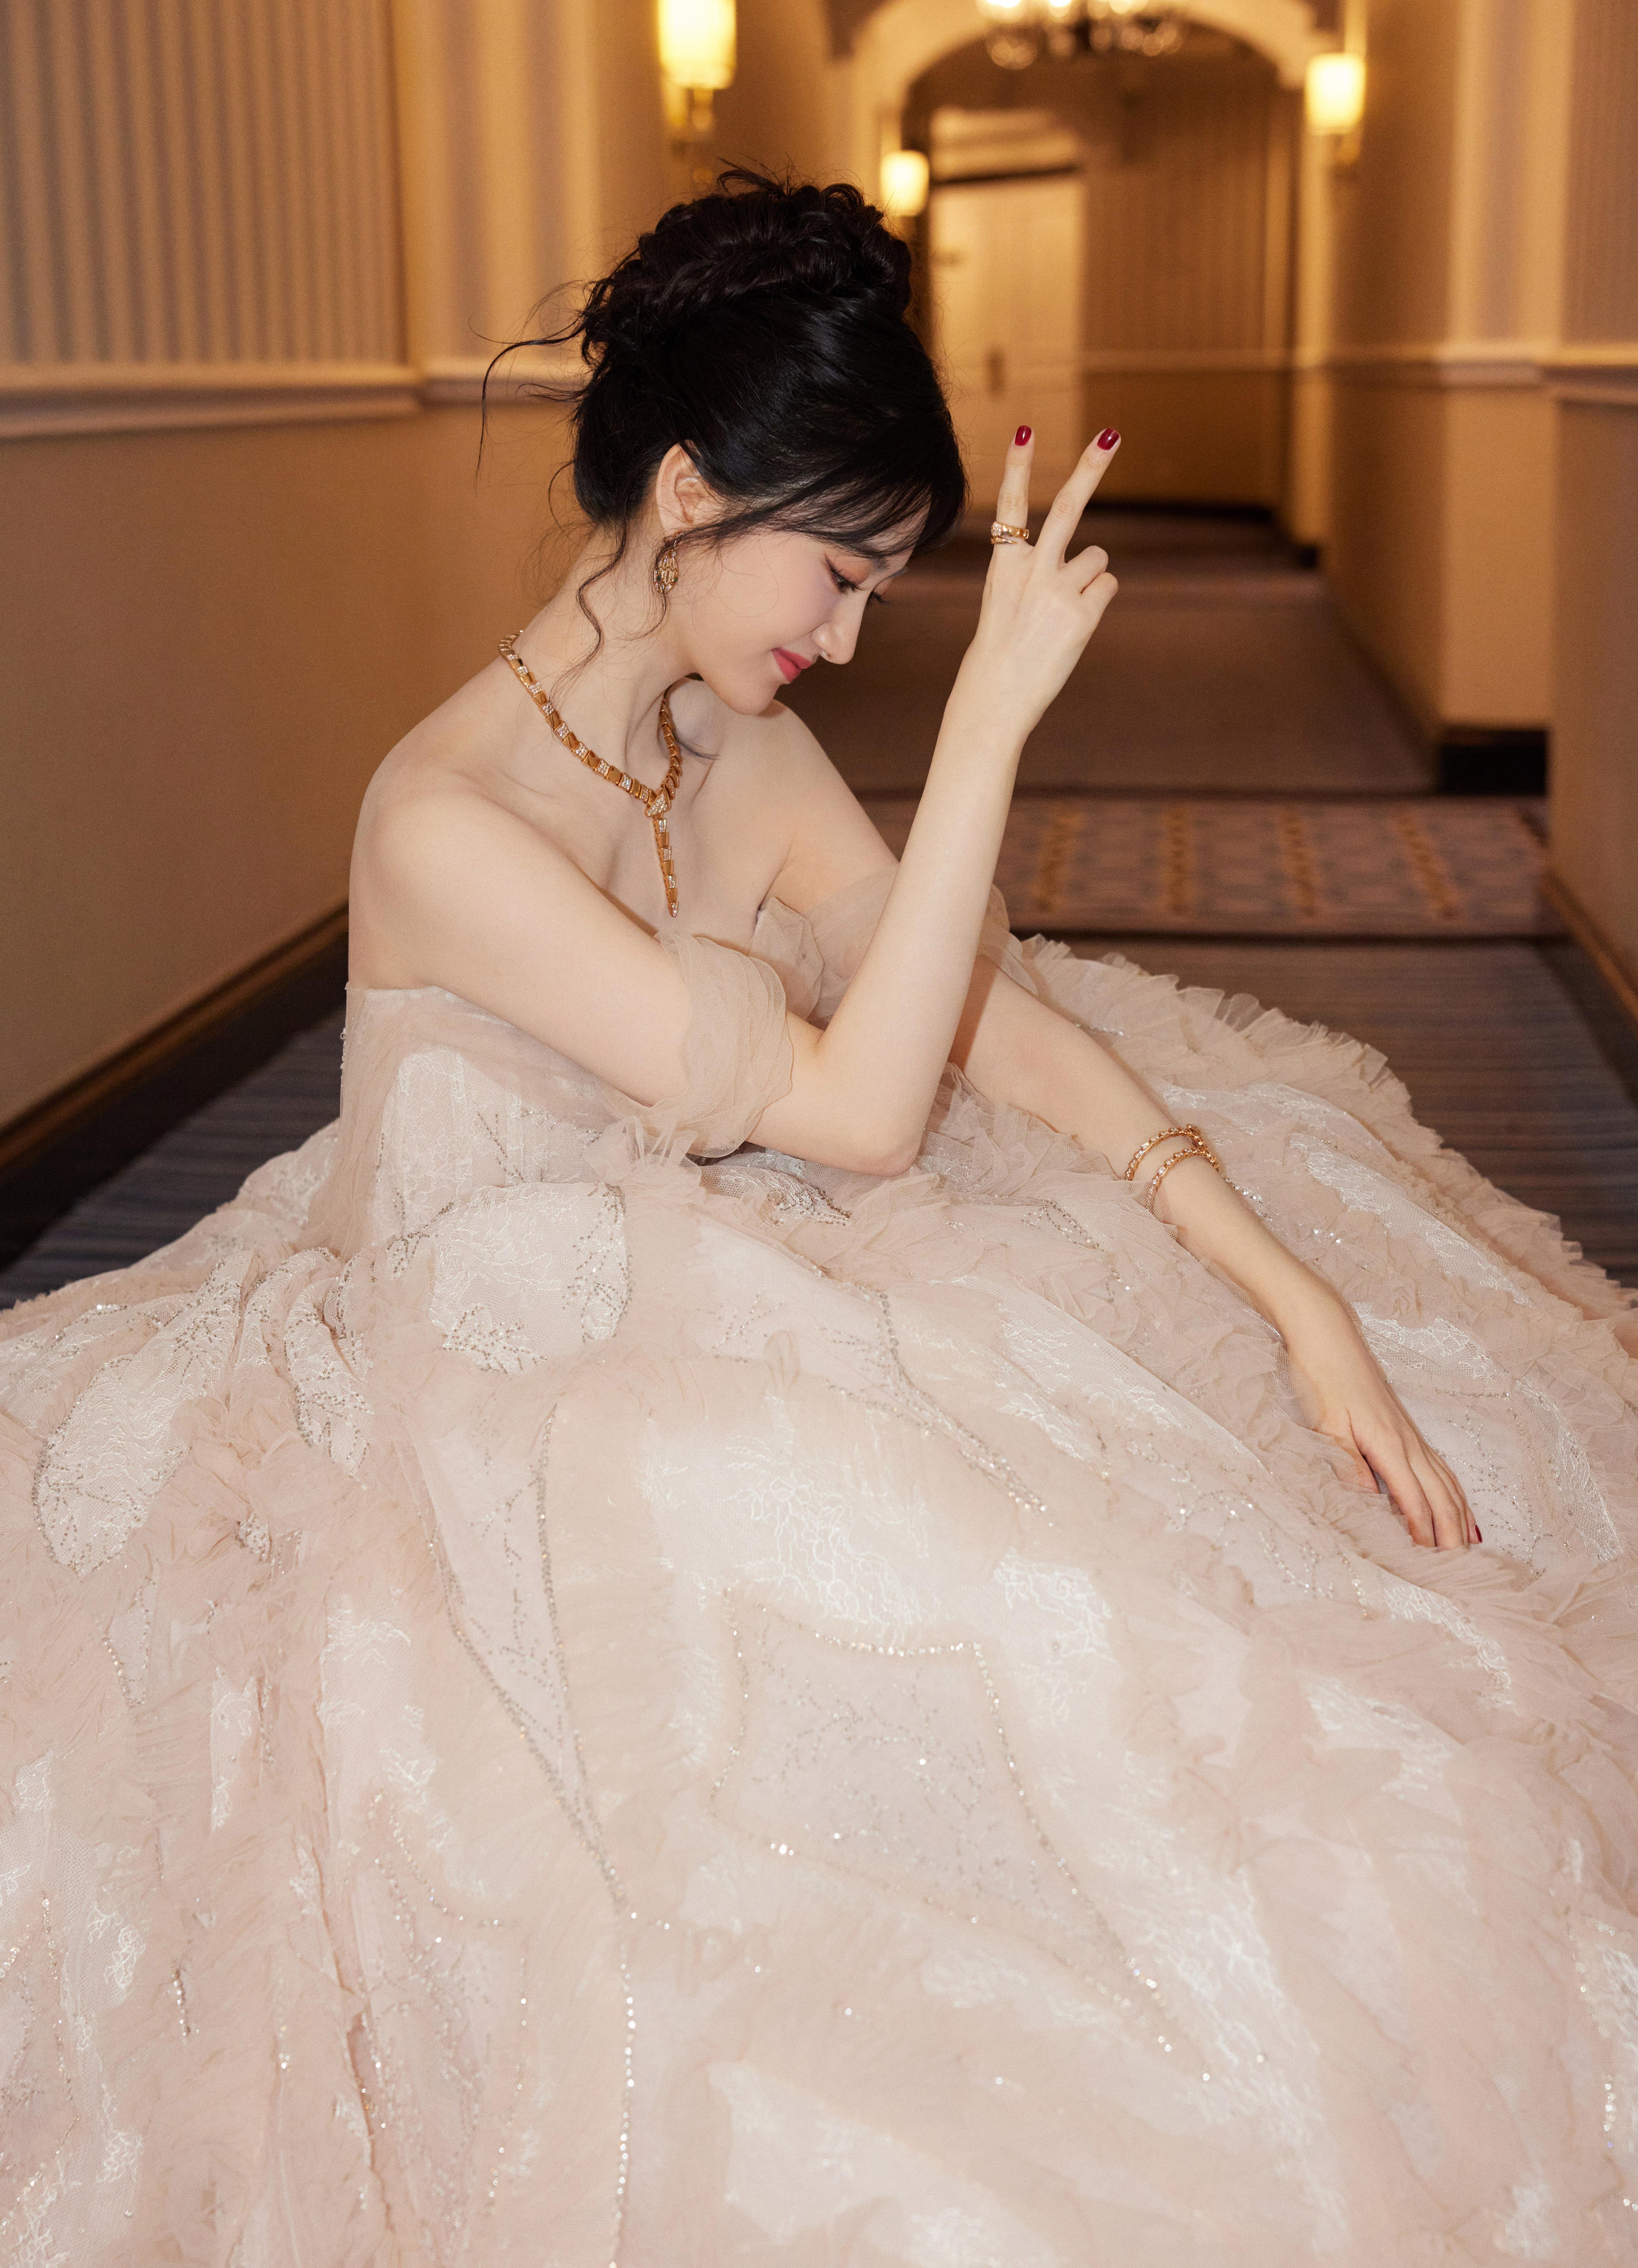 甜美公主范 景甜穿白色蓬蓬裙清新怡人,1 (1)